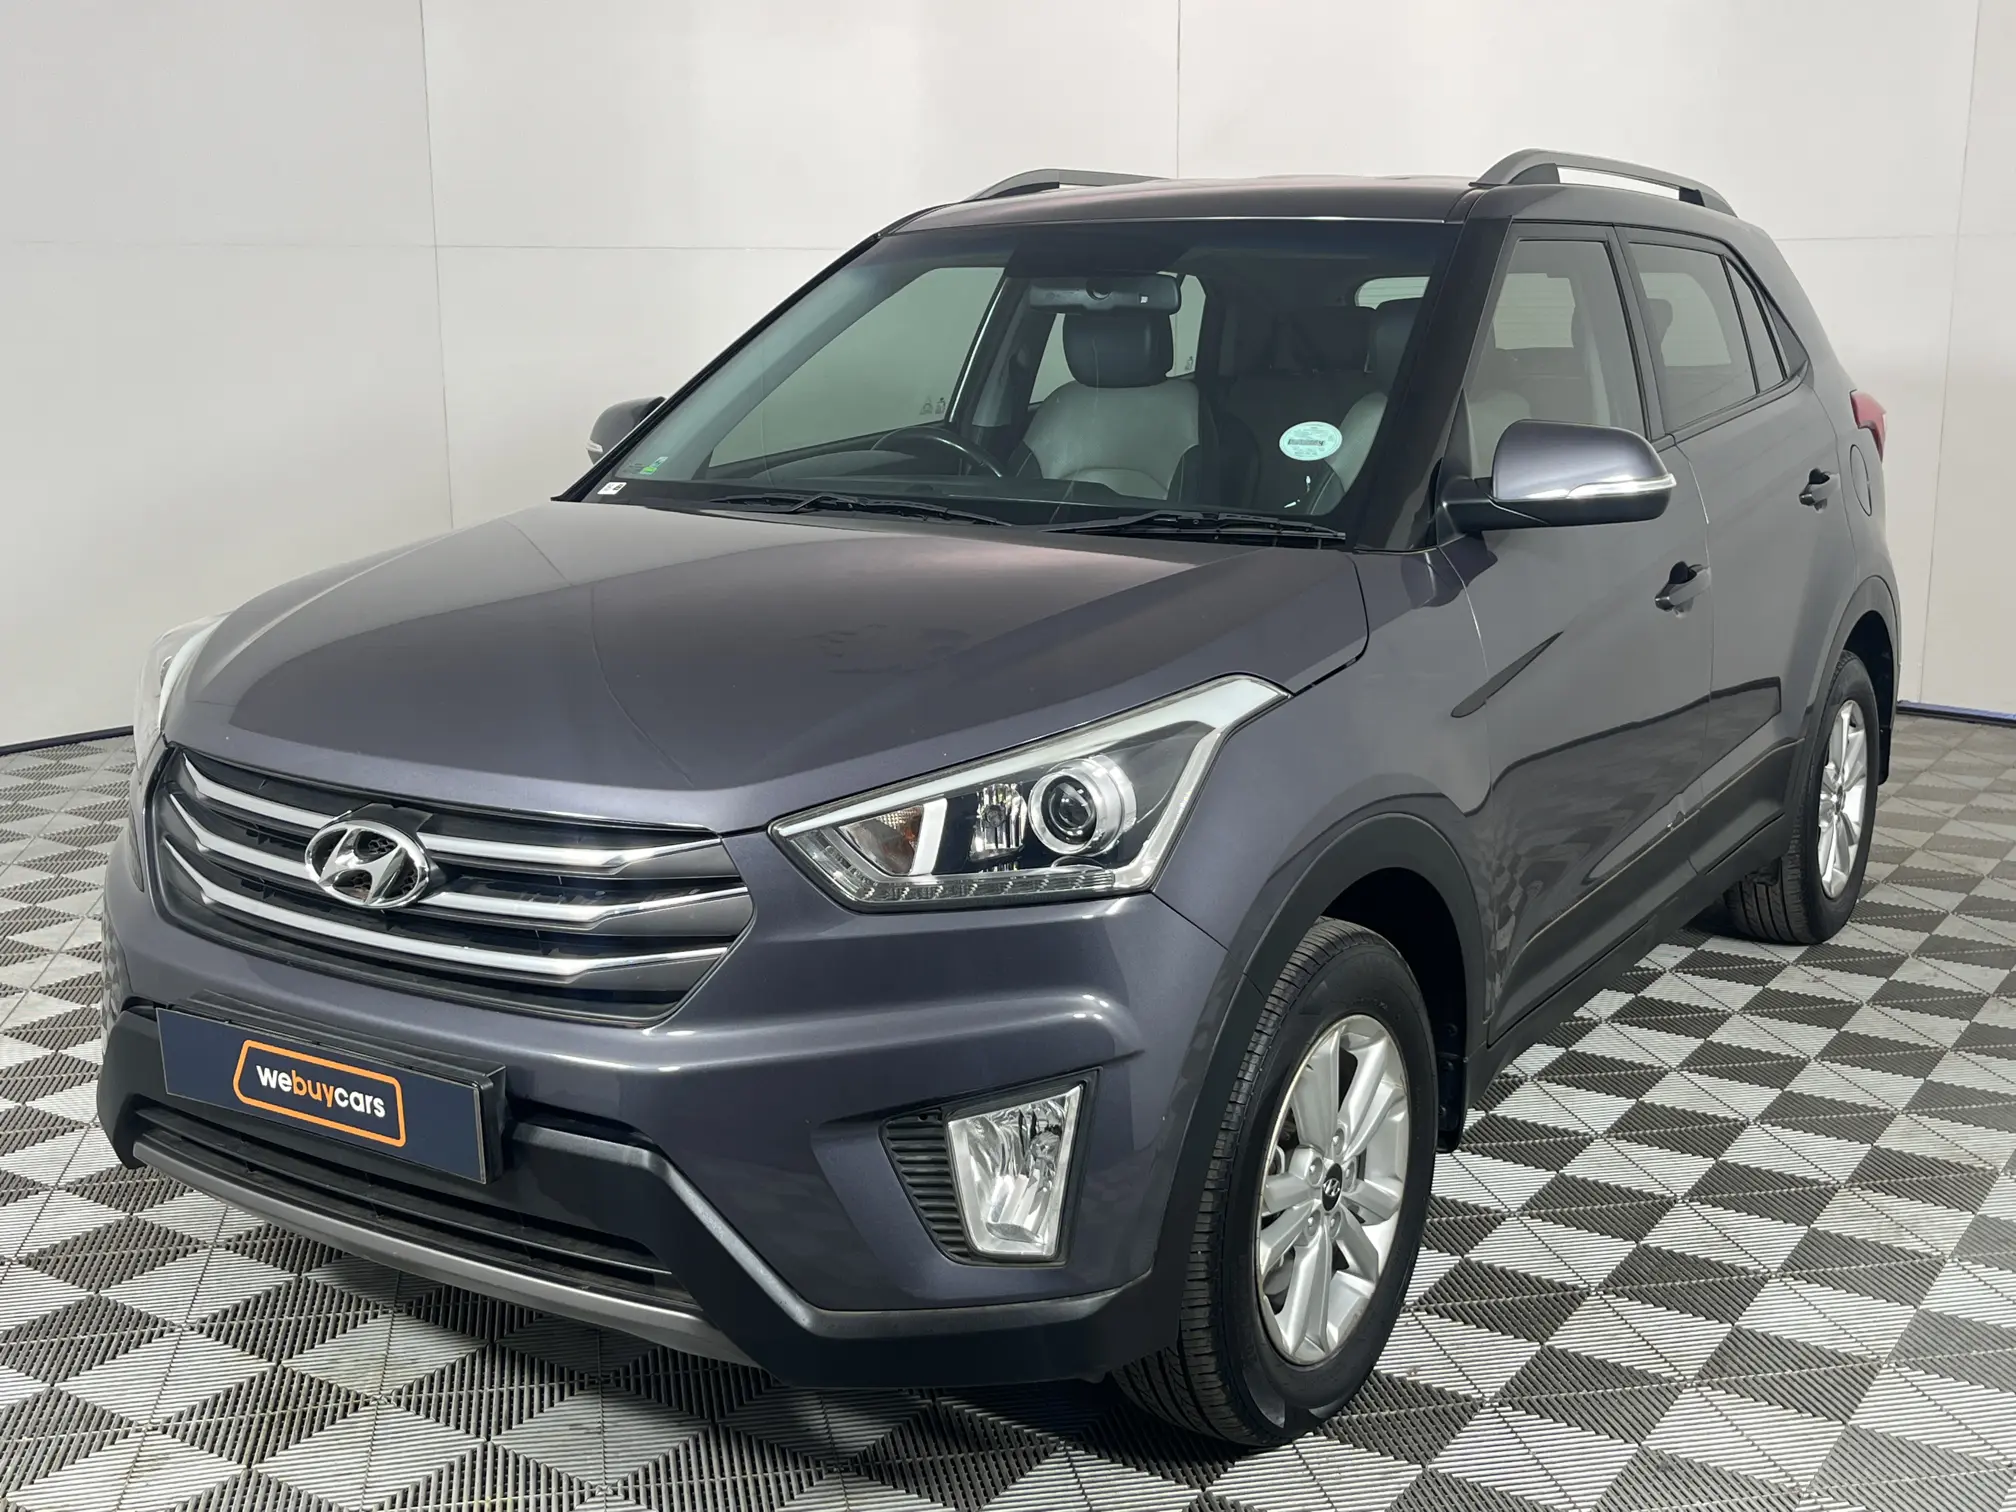 2018 Hyundai Creta 1.6 Executive Auto